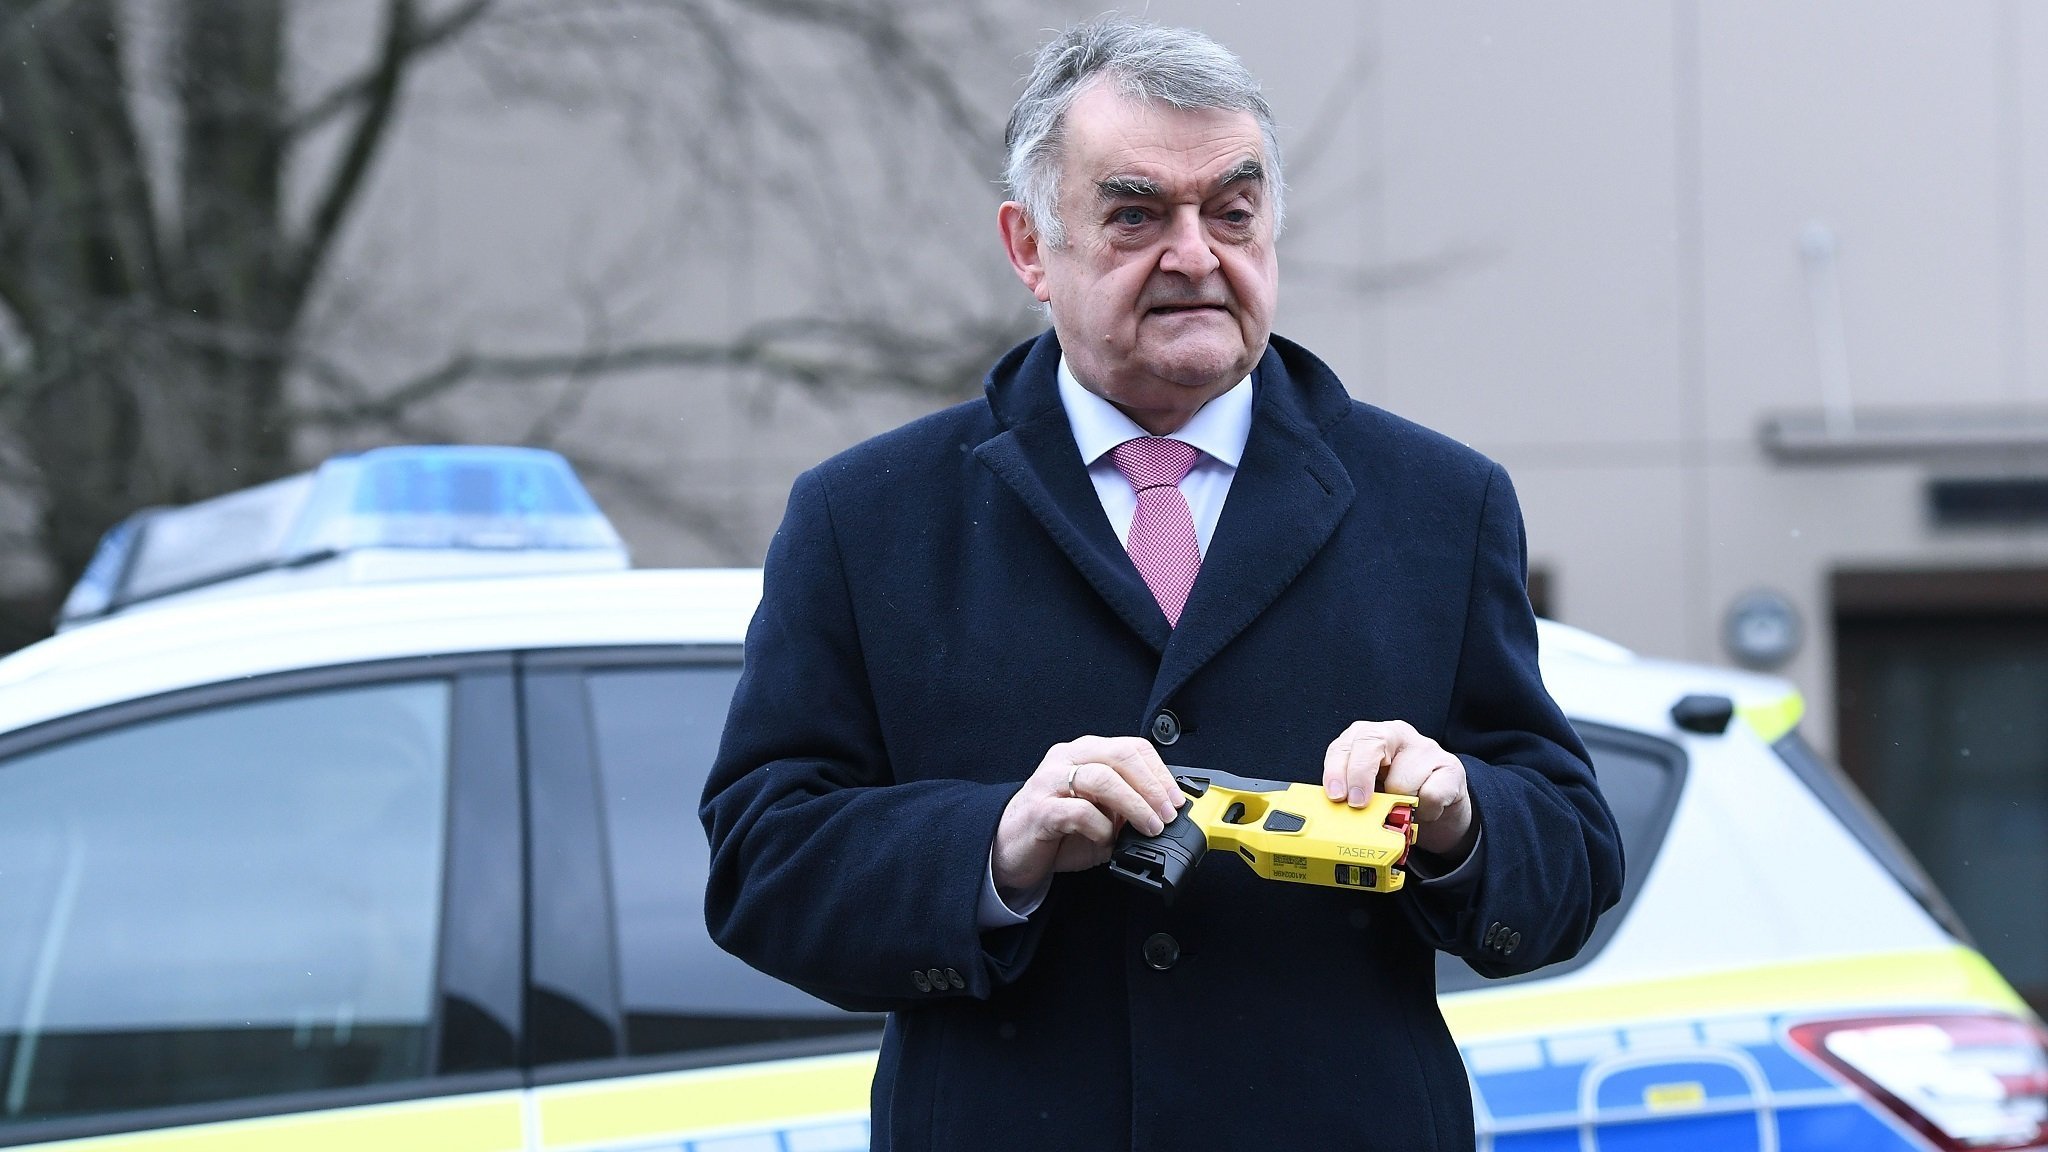 Innenminister Reul mit Elektroschocker in der Hand vor Polizeifahrzeug